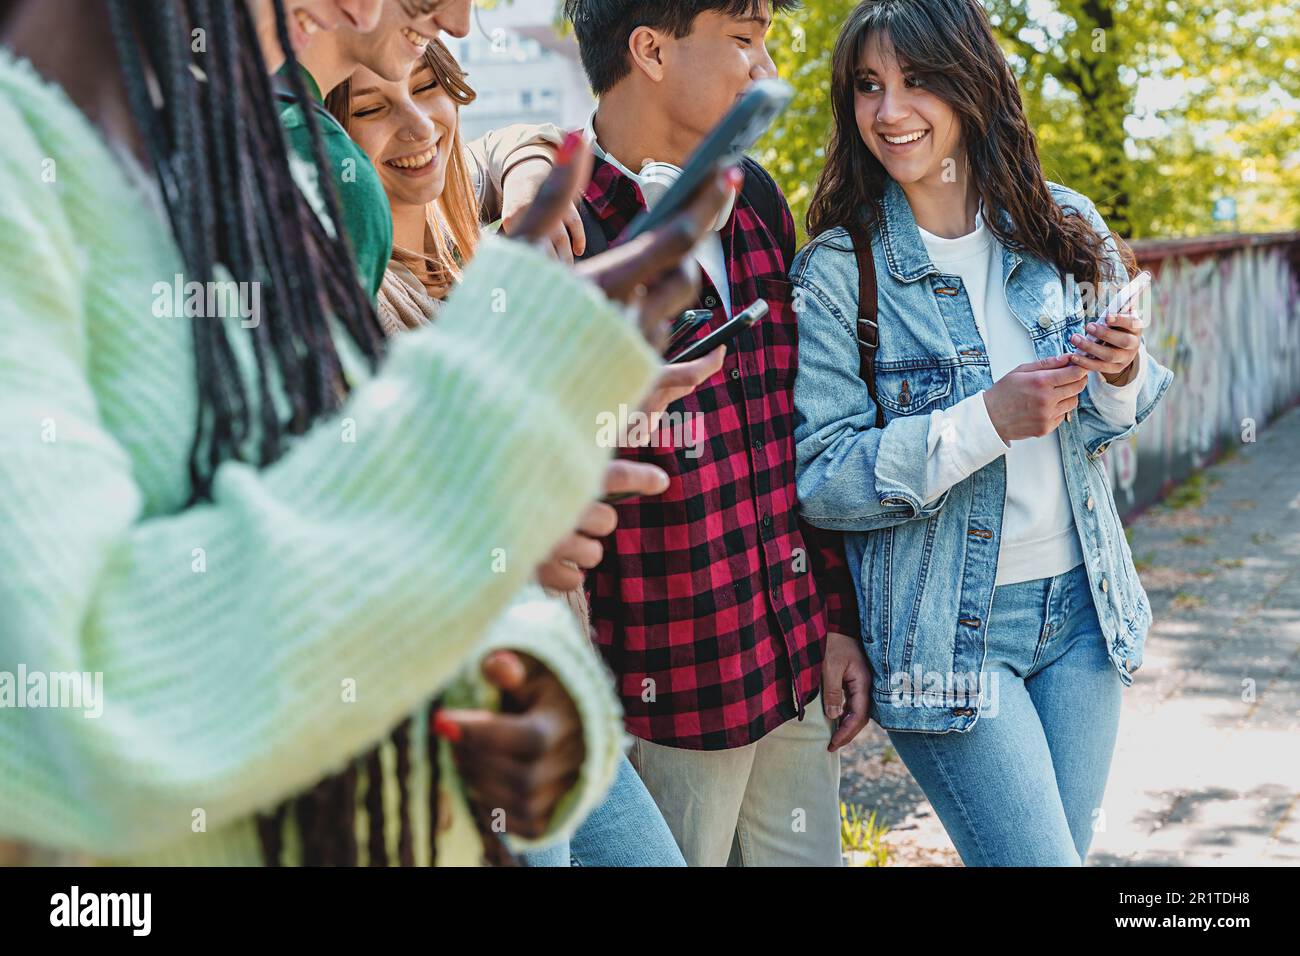 Eine vielfältige Gruppe von Studenten der Generation Z versammelte sich in einem Park. Die jungen Leute machen Scherze und überprüfen soziale Netzwerke auf ihren Smartphones. Stockfoto